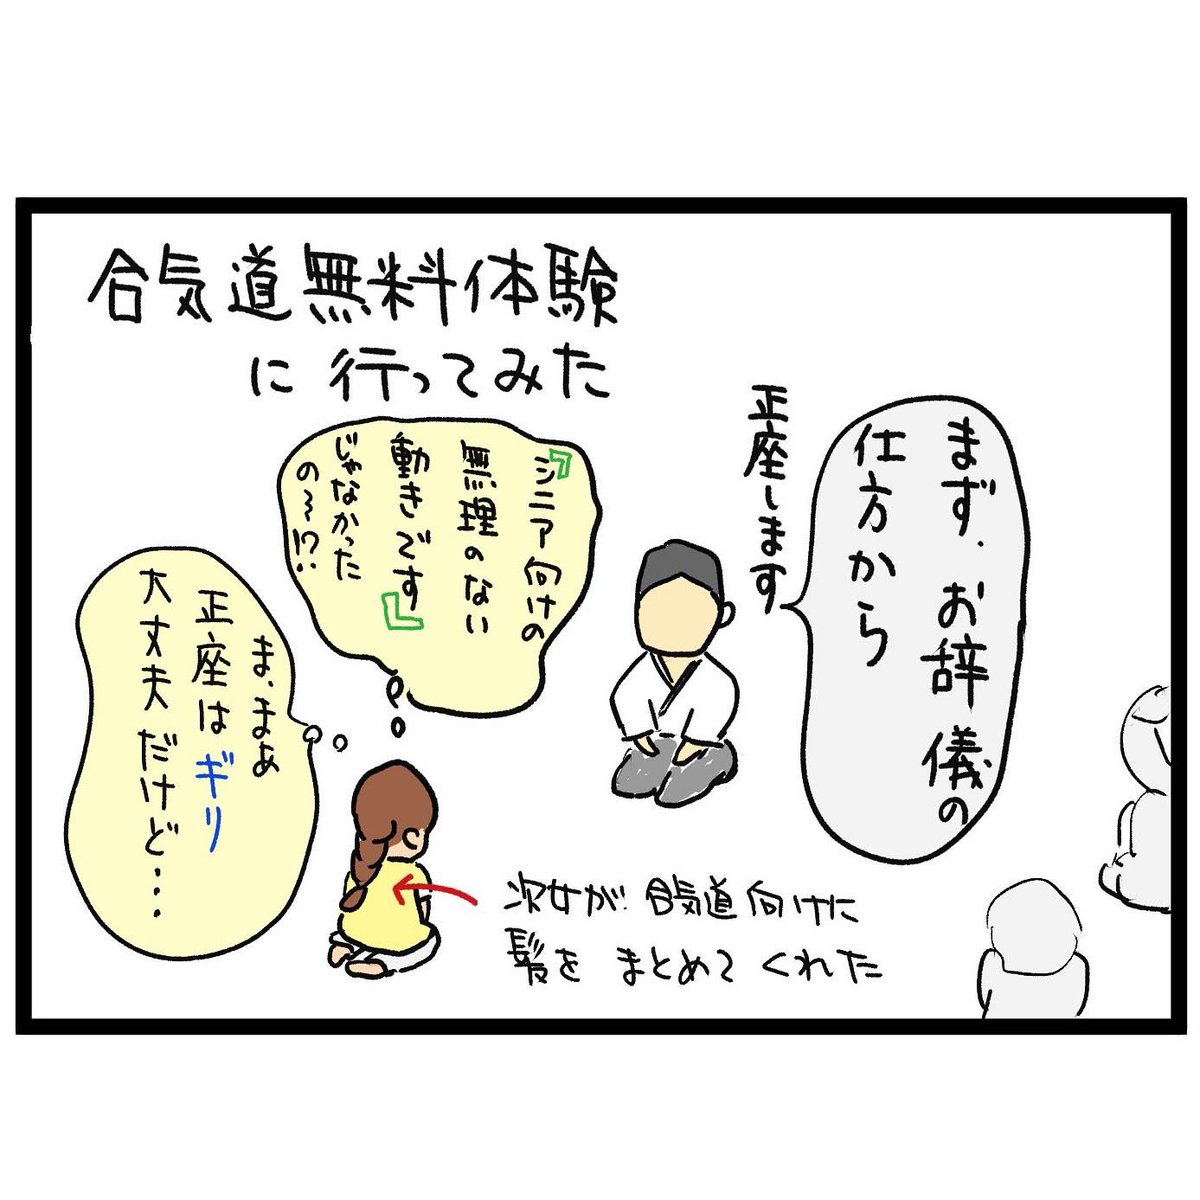 #四コマ漫画
#合気道体験 